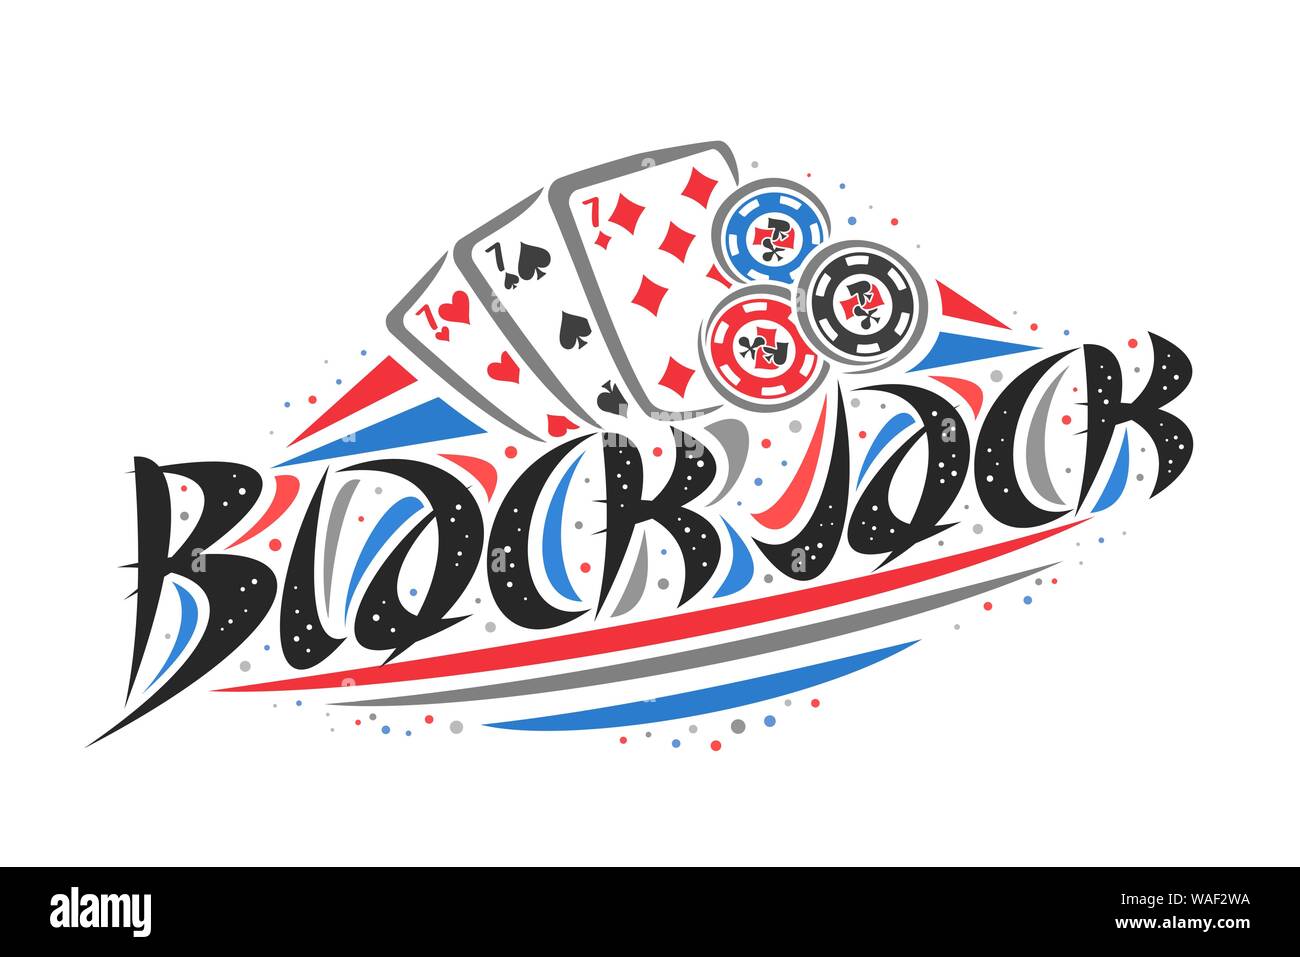 Vektor logo für Blackjack, kreative Darstellung der drei Siebener der verschiedenen Anzüge, original dekorative Pinsel Schrift für Wort Blackjack, vereinfachende Stock Vektor